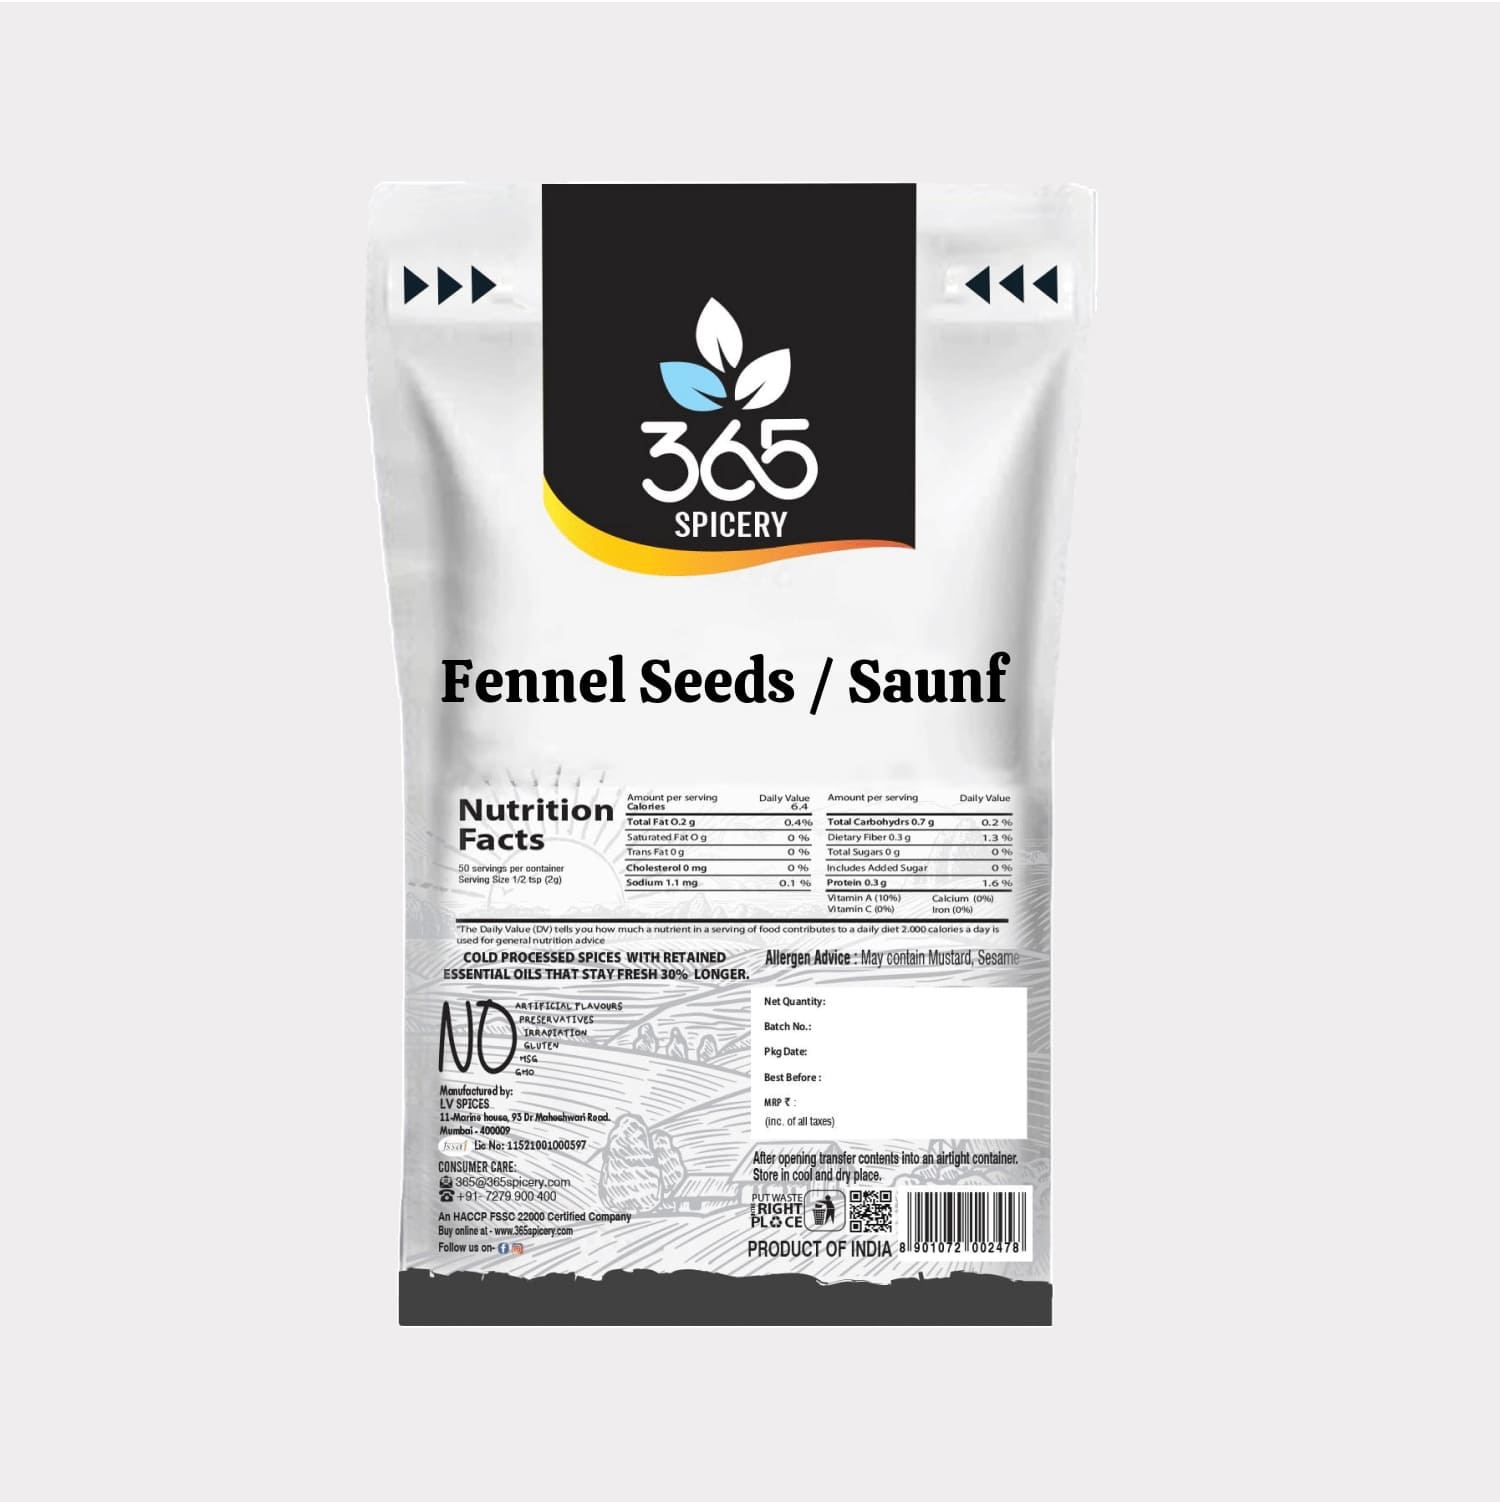 Fennel Seeds / Saunf